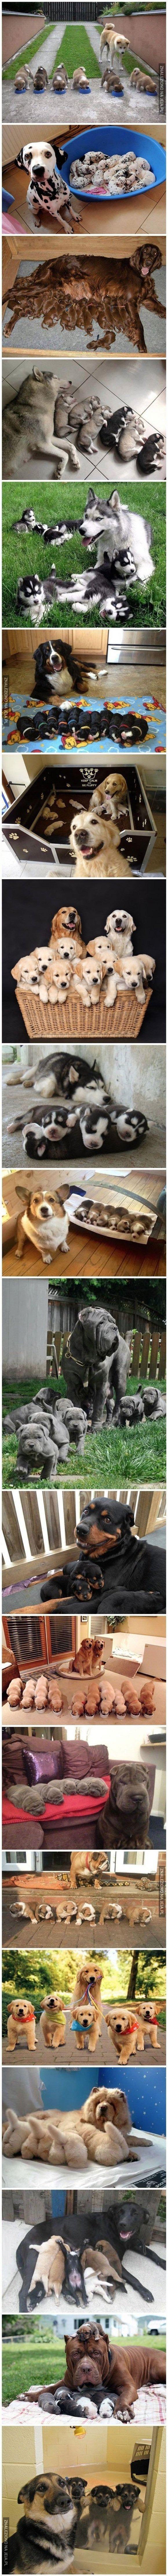 Dumni psi rodzice